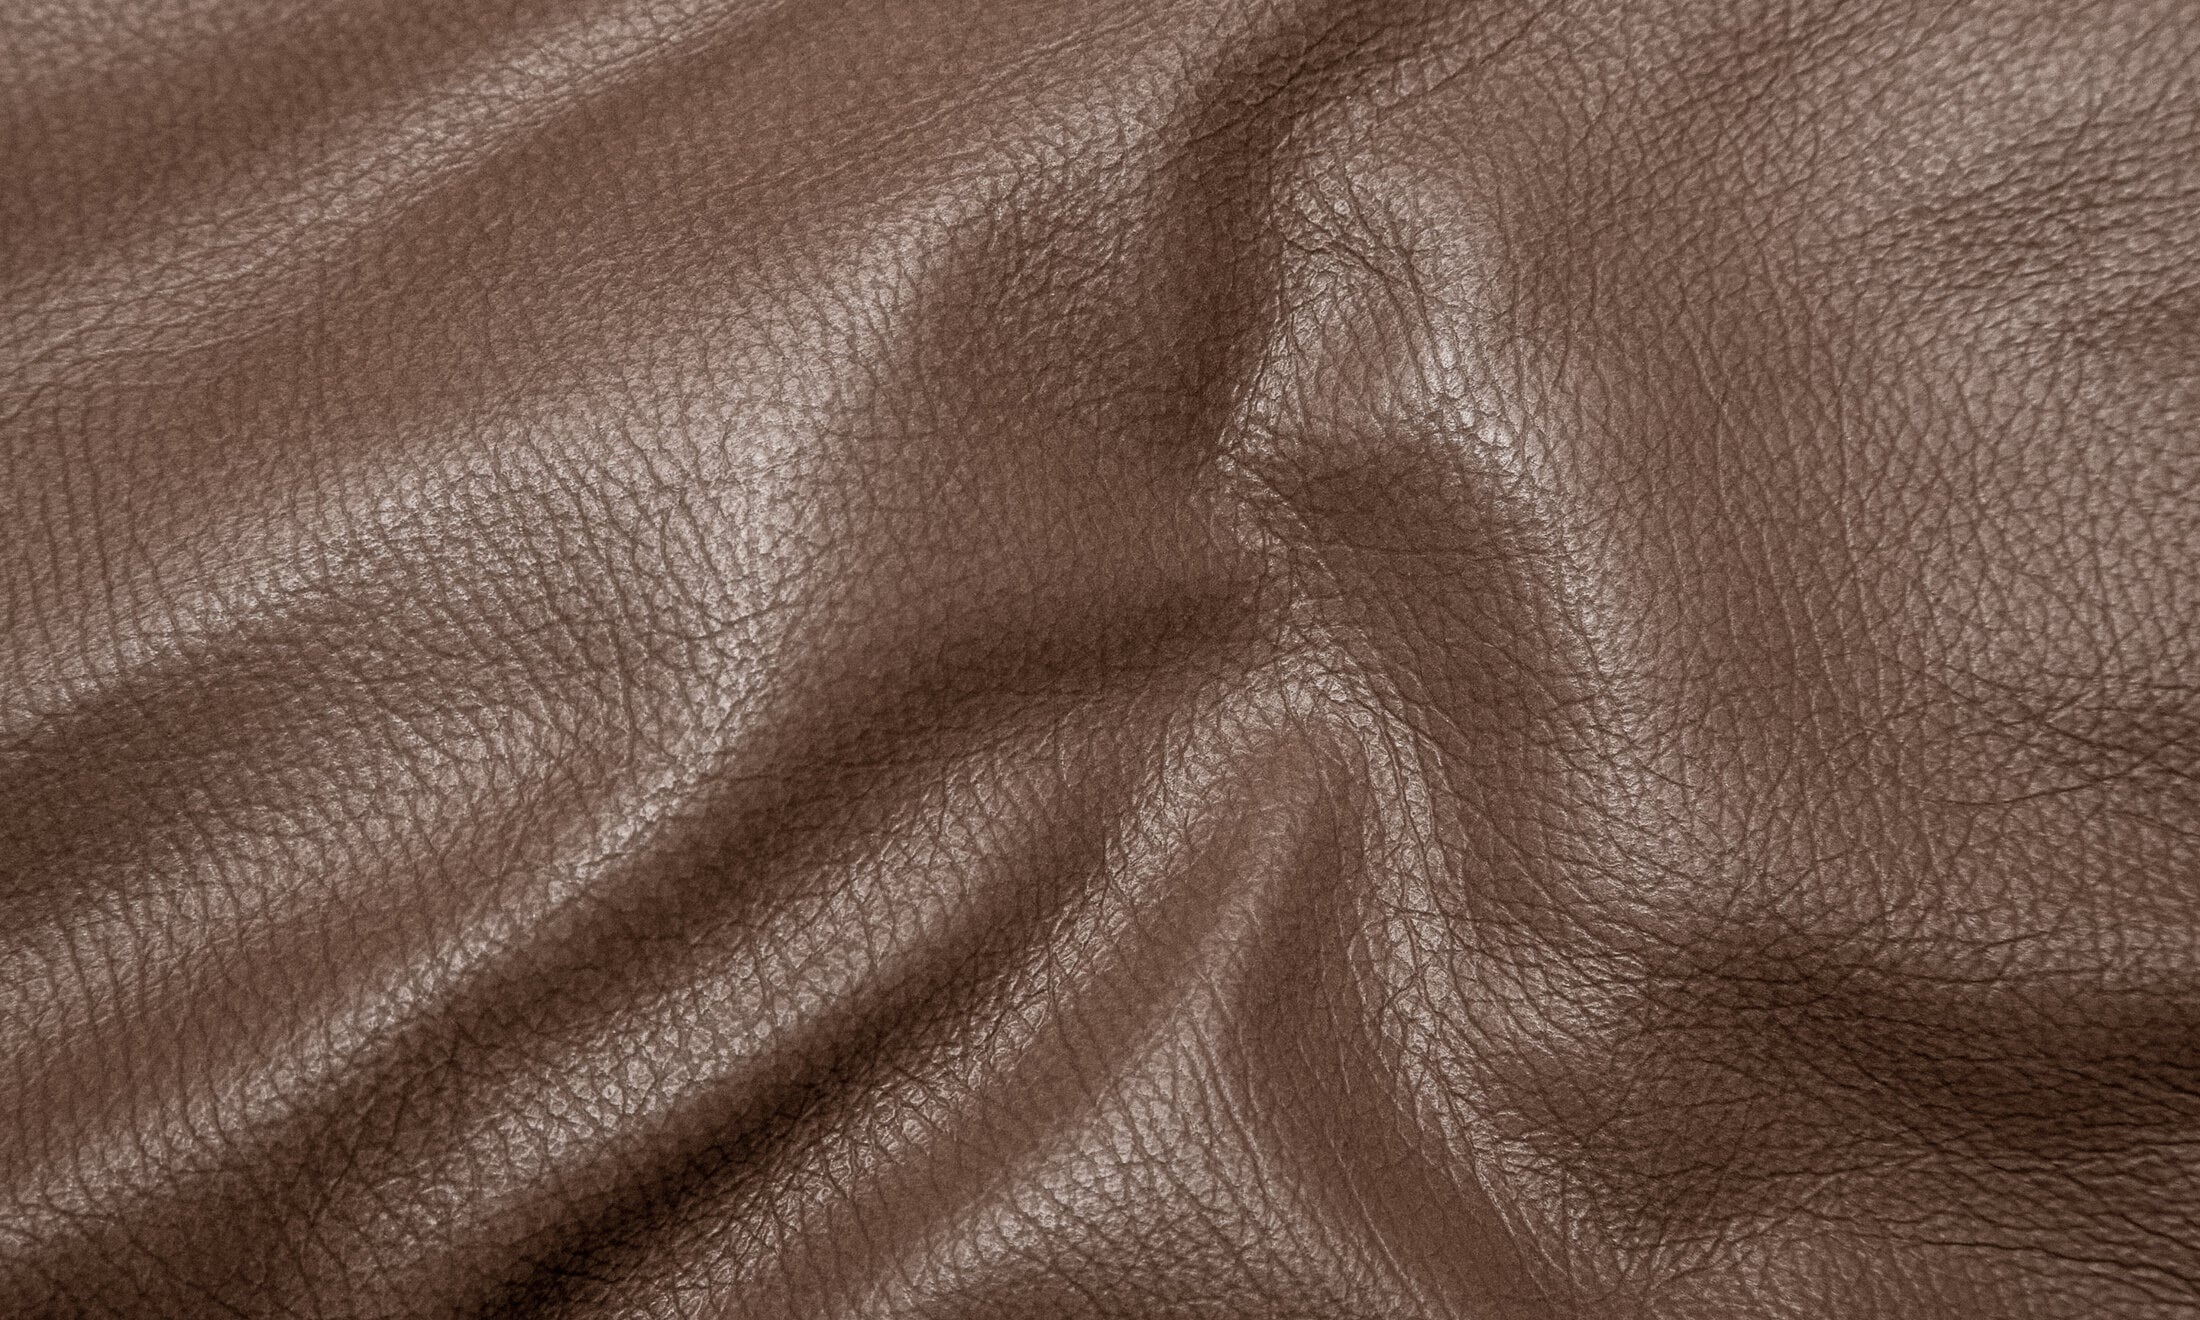 https://www.meindl.se/pub_docs/files/Startsidaförflight/Meindl-lader-textur-bakgrund-leather-texture.jpg